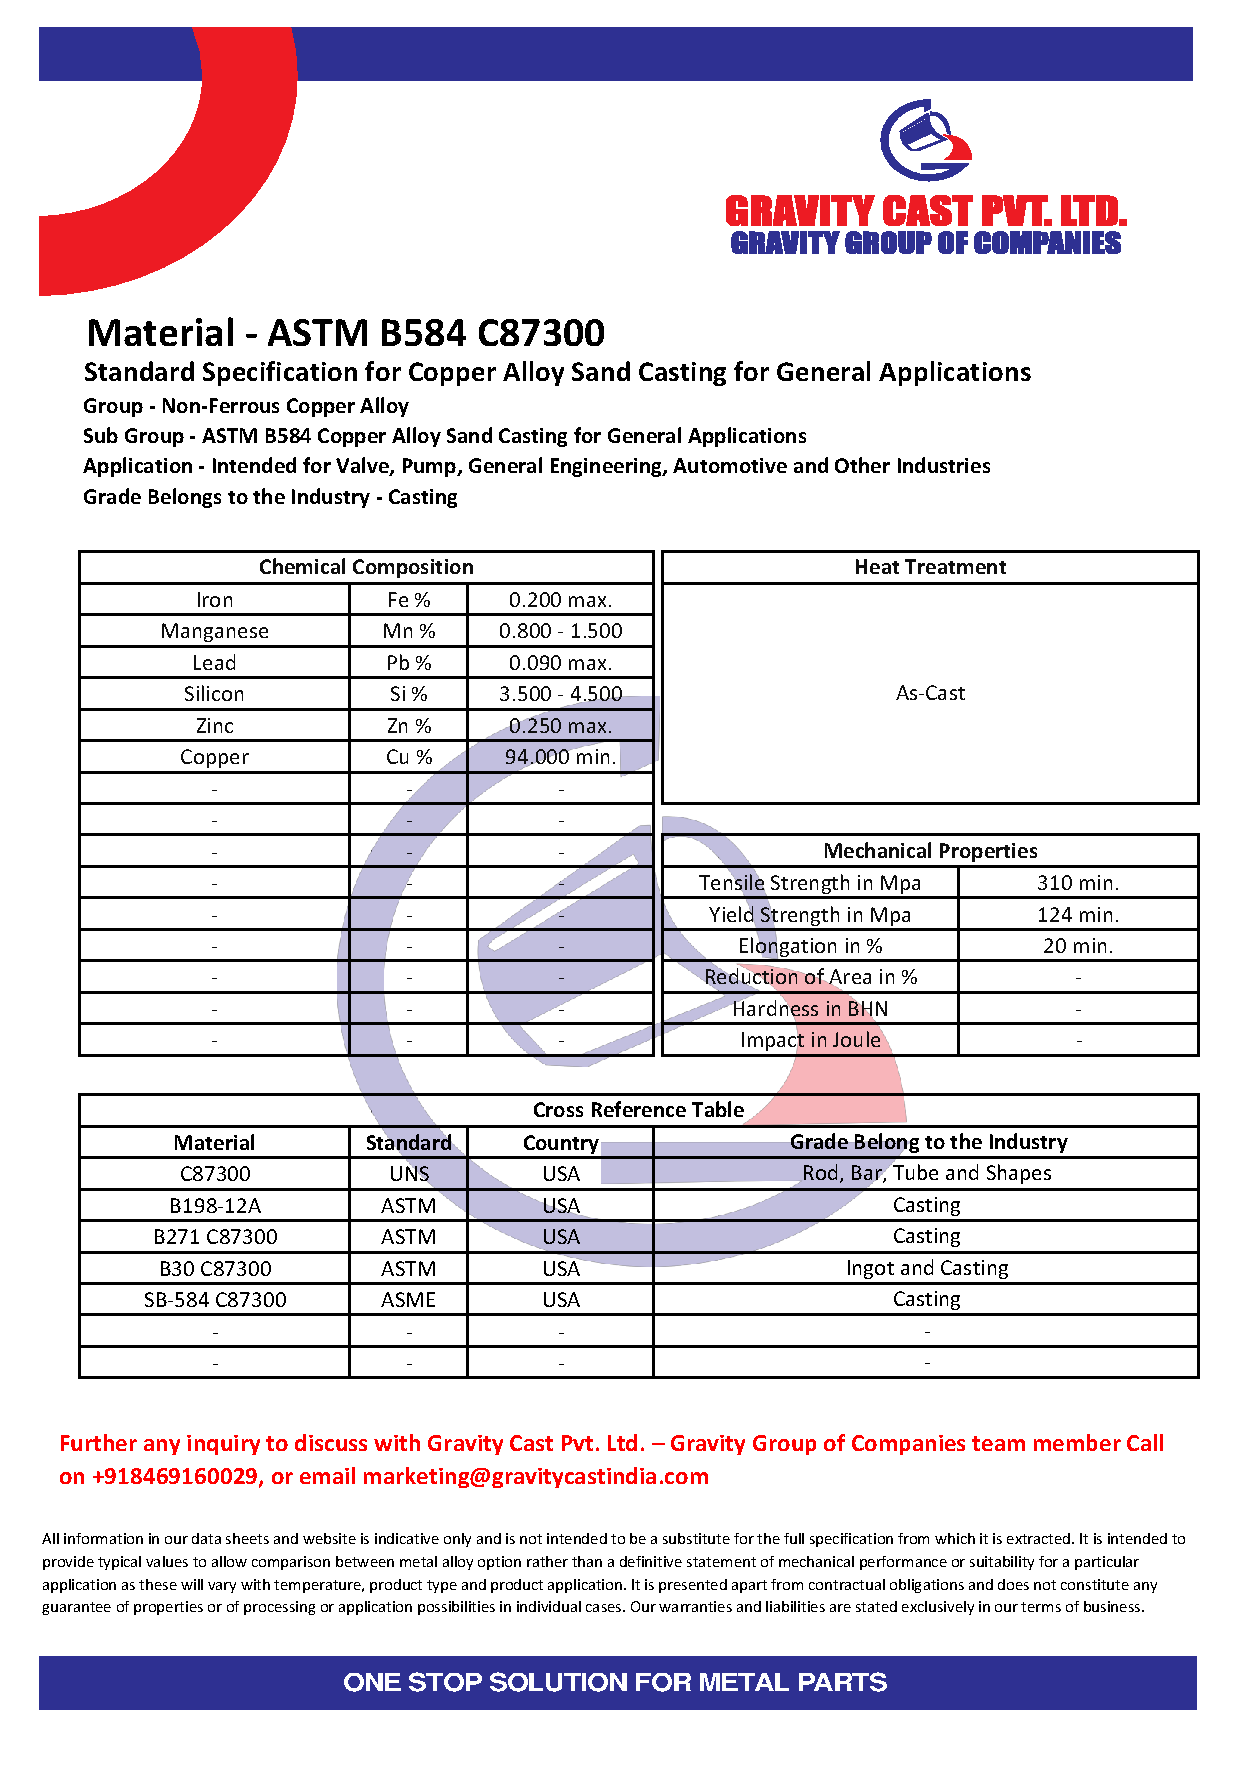 ASTM B584 C87300.pdf